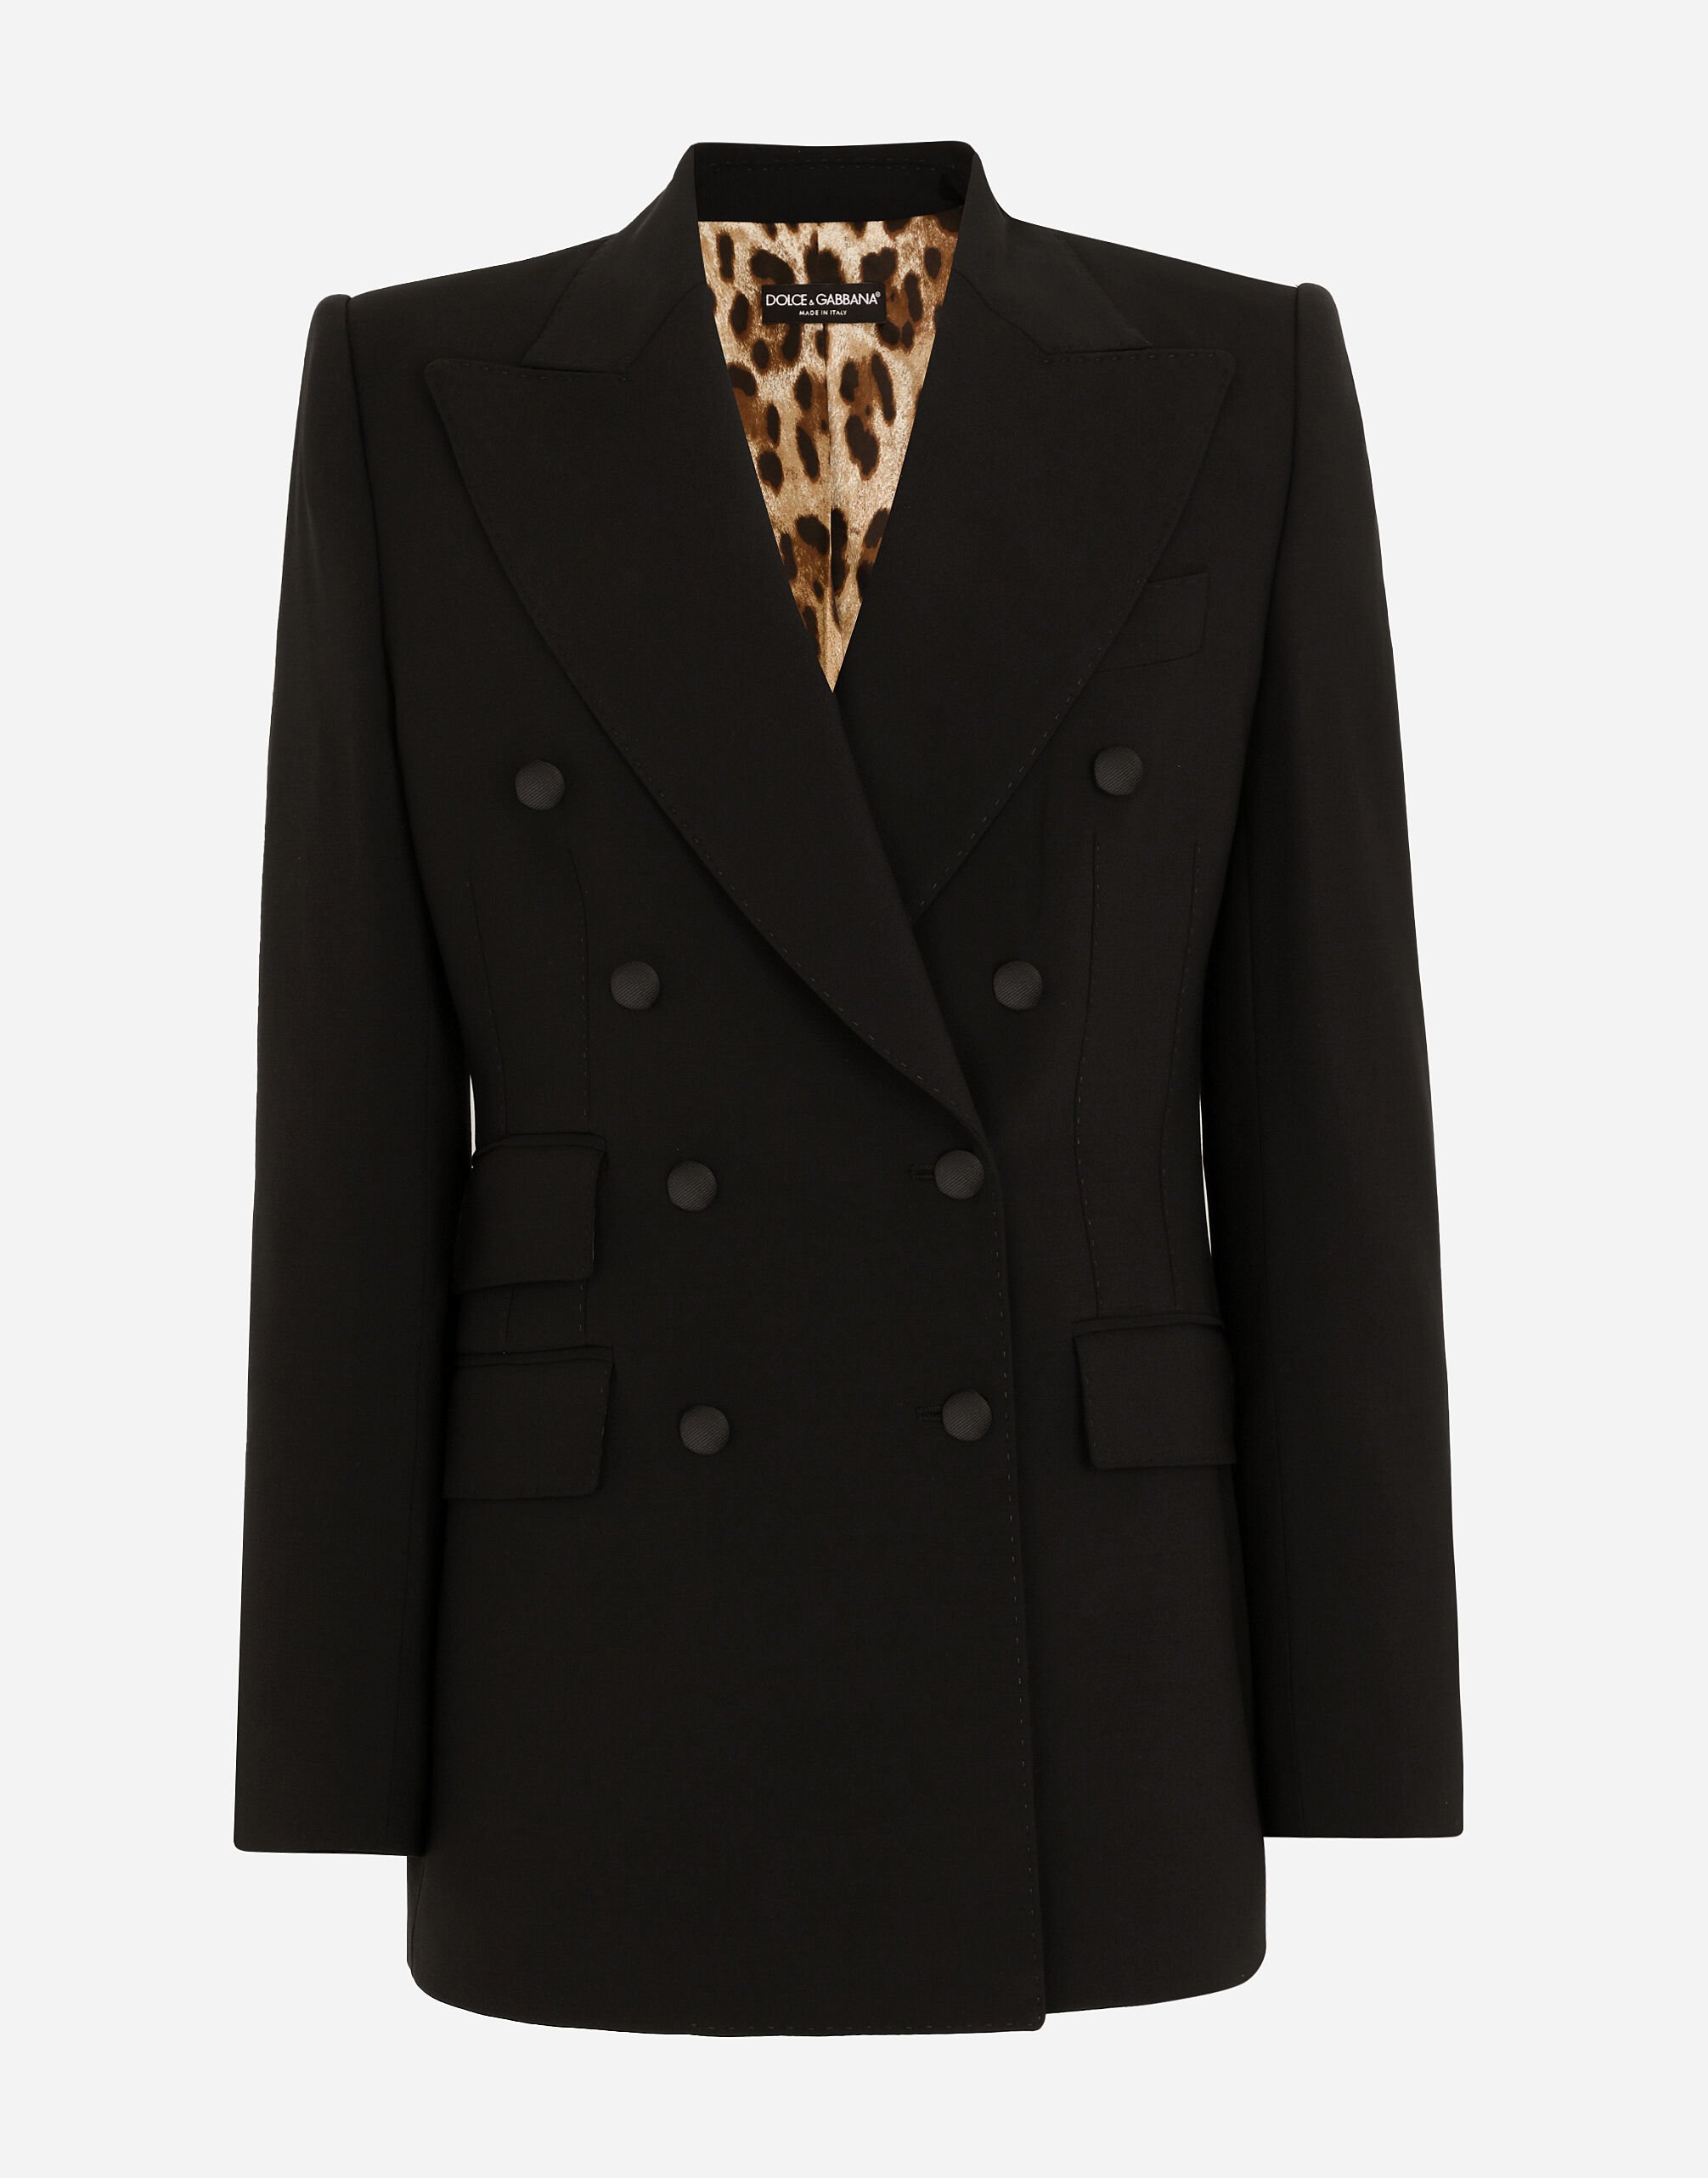 Dolce&Gabbana 더블 브레스티드 버진 울 재킷 멀티 컬러 BB5970AR441